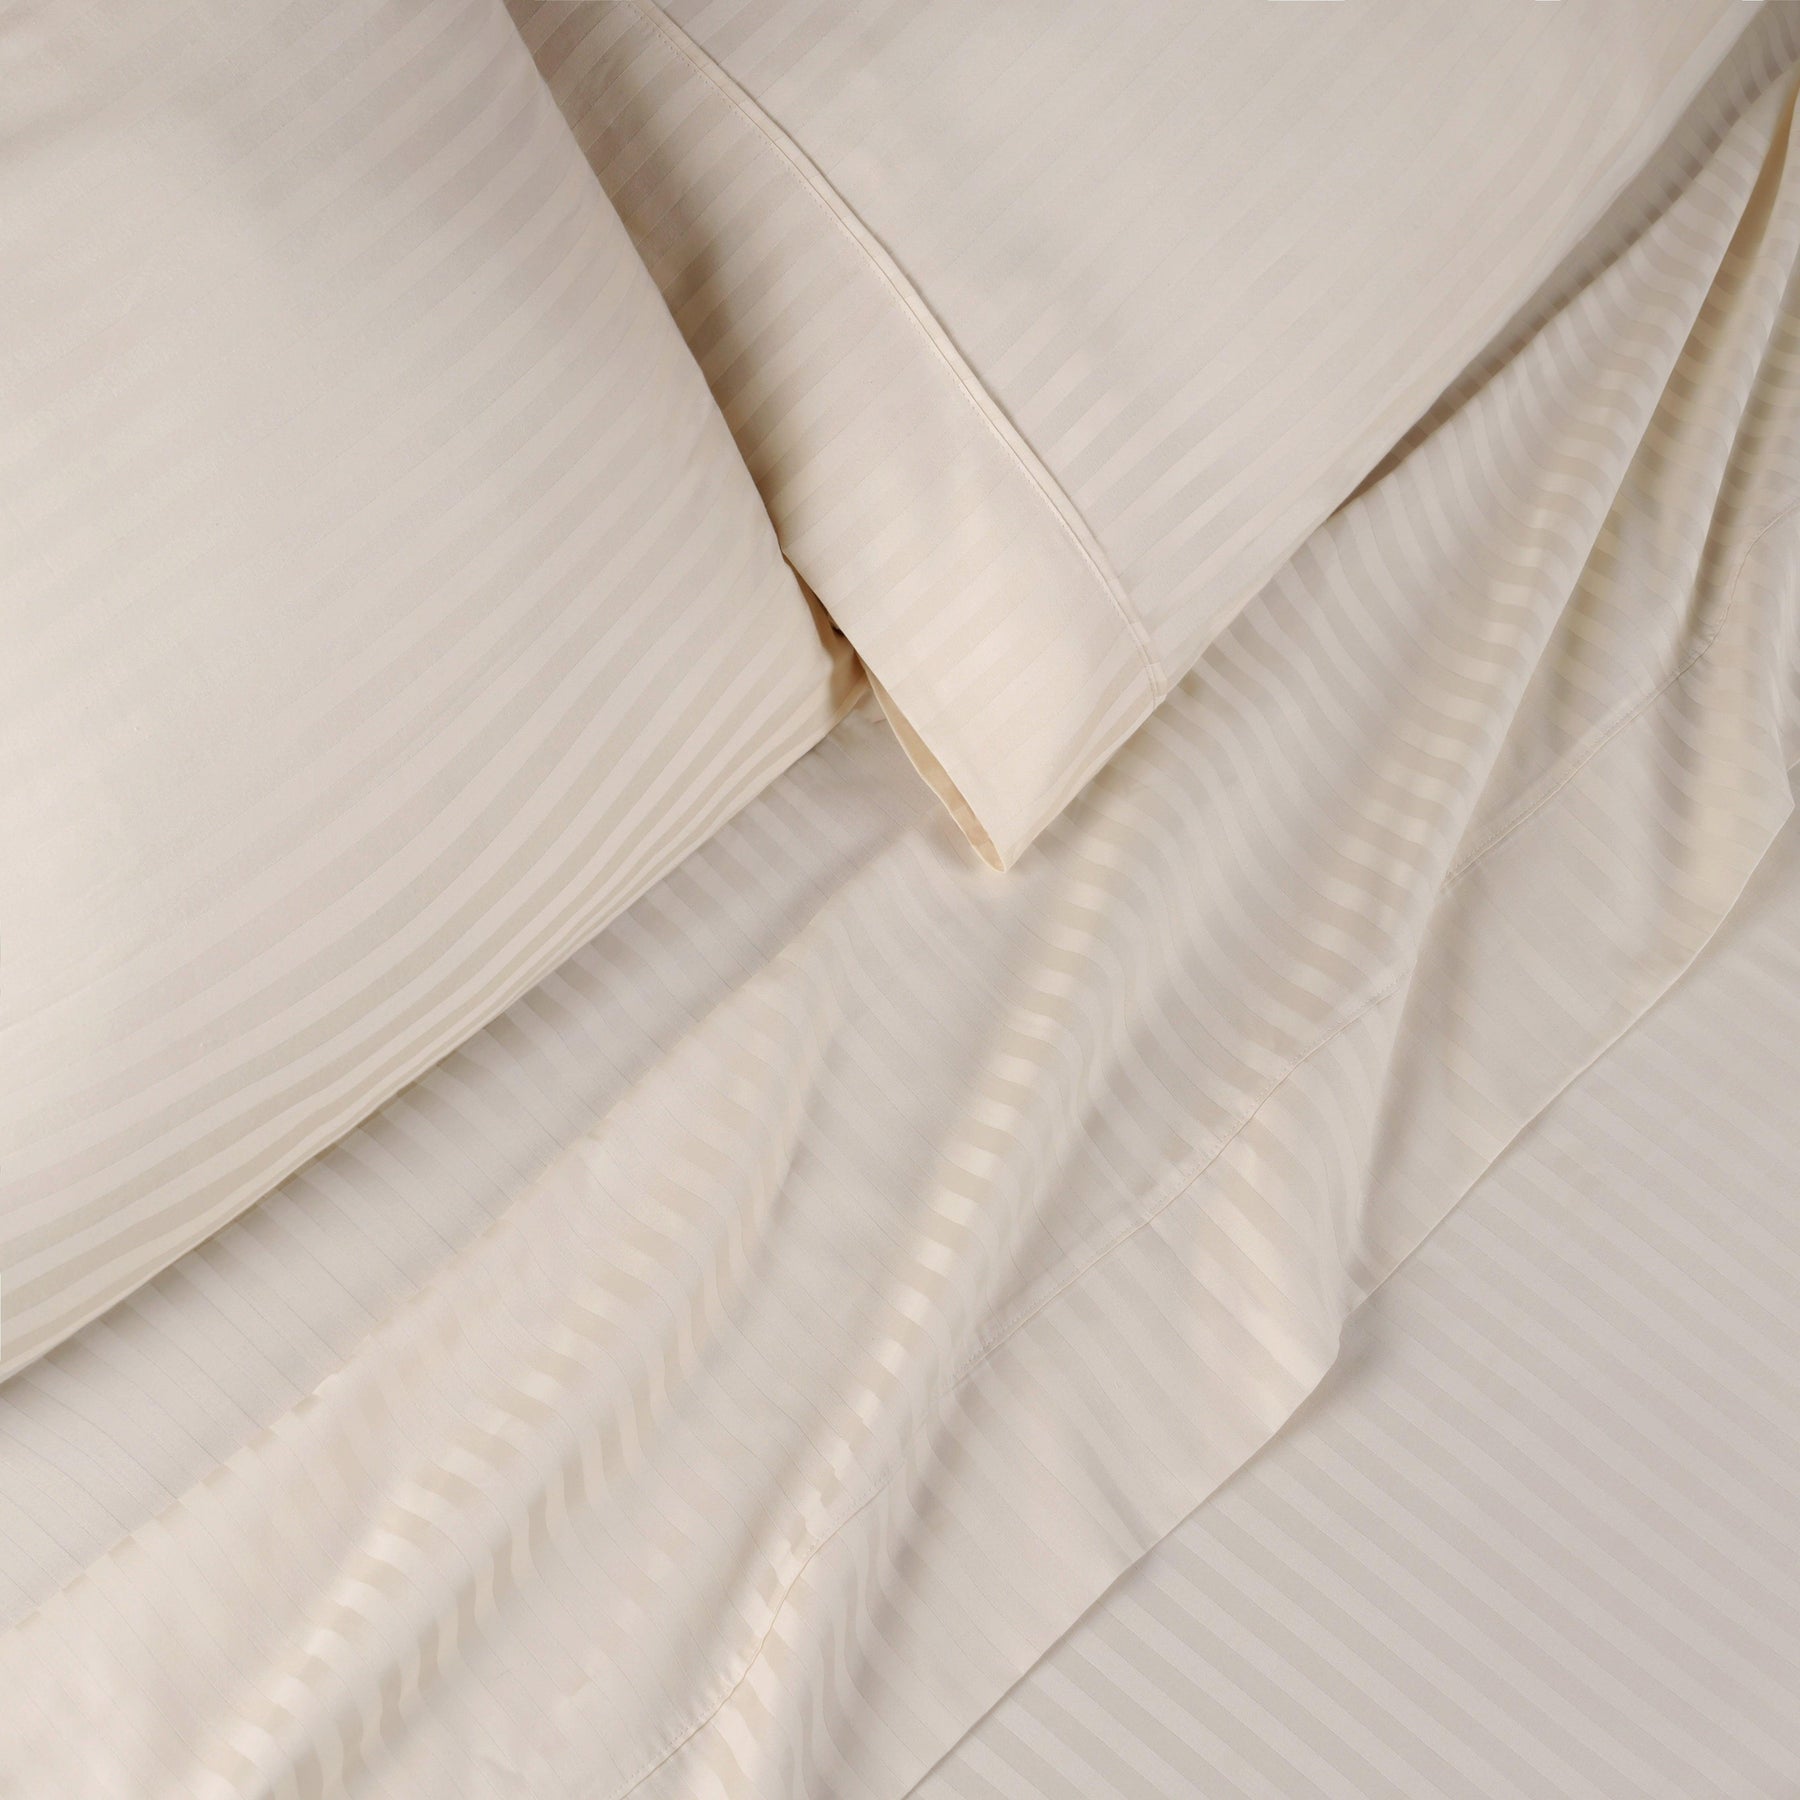 Superior 300 Thread Count Premium Egyptian Cotton Stripe Sheet Set - Ivory